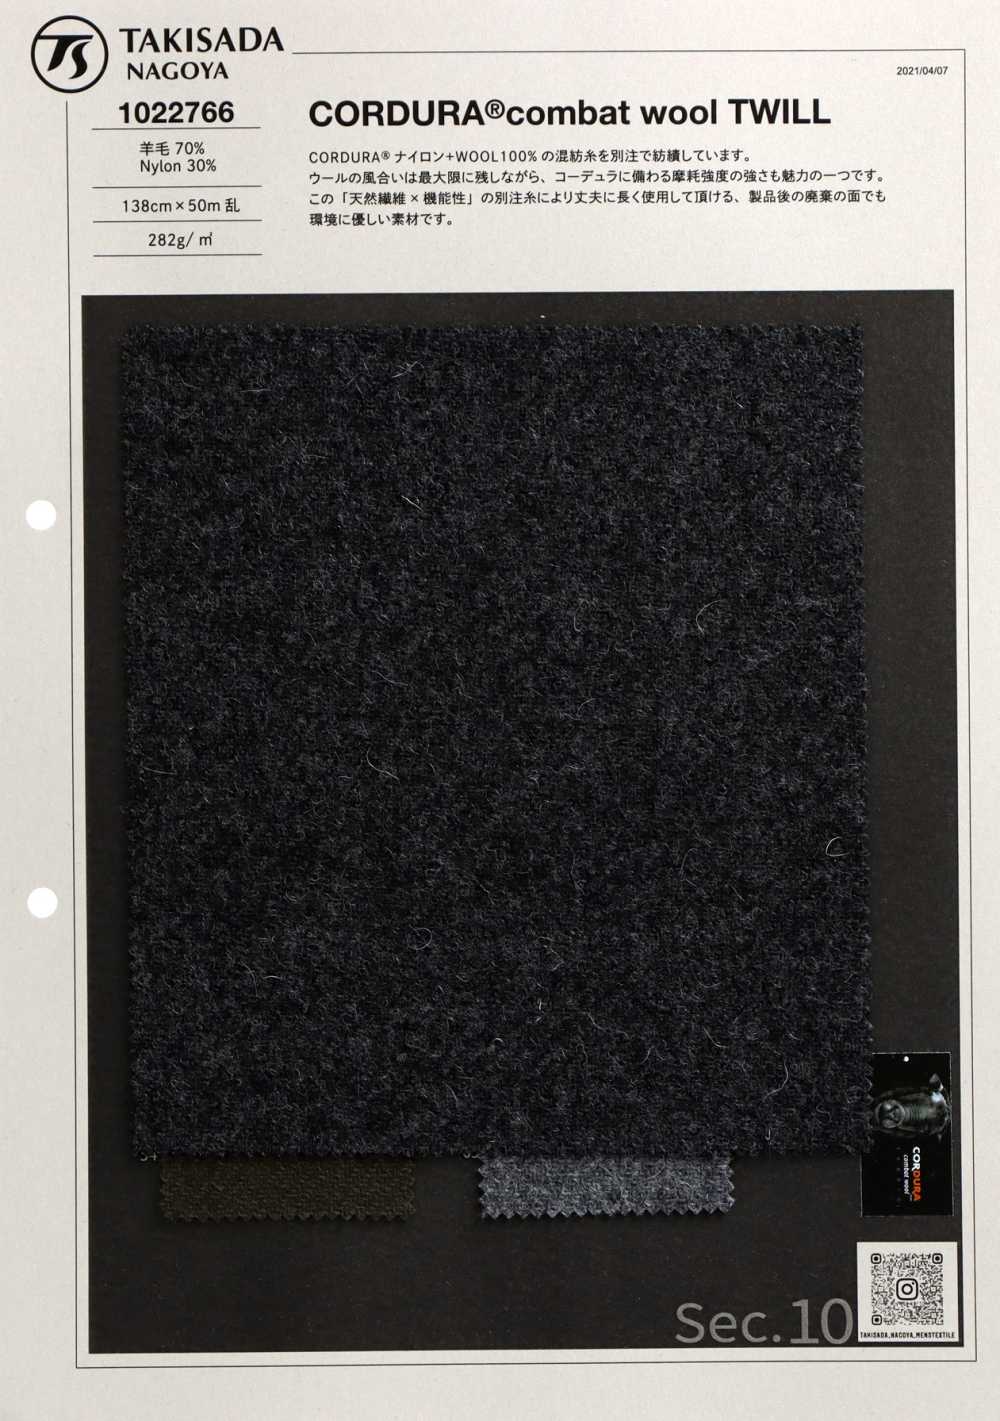 1022766 CORDURA Combat Wool Twill[Fabrication De Textile] Takisada Nagoya